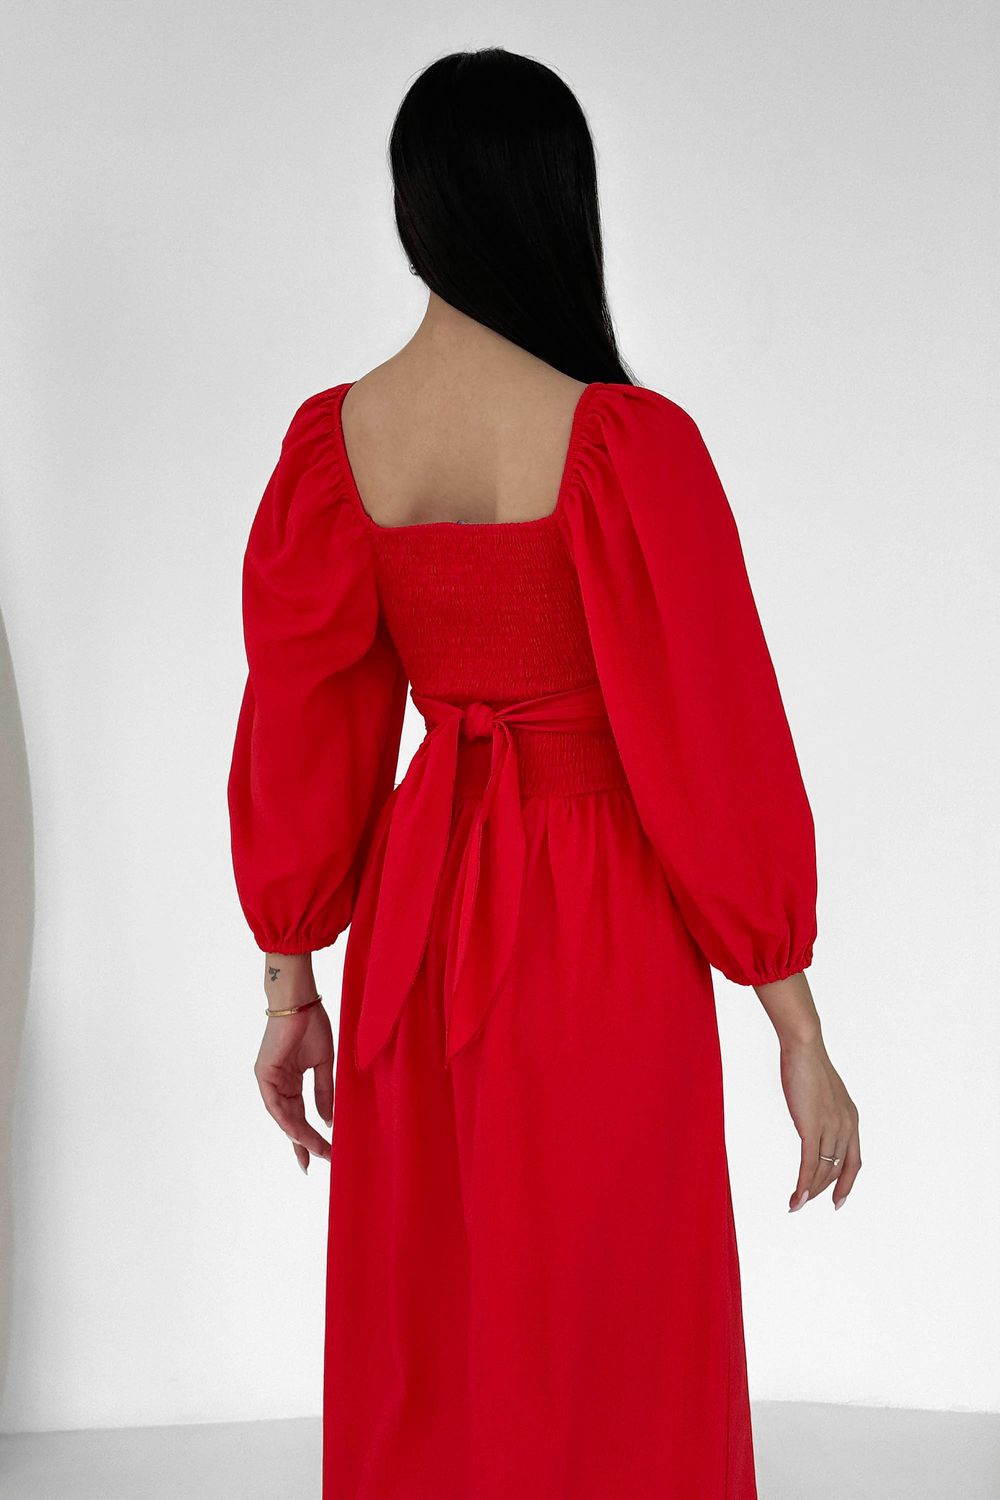 Дизайнерское летнее платье из льна красного цвета - фото